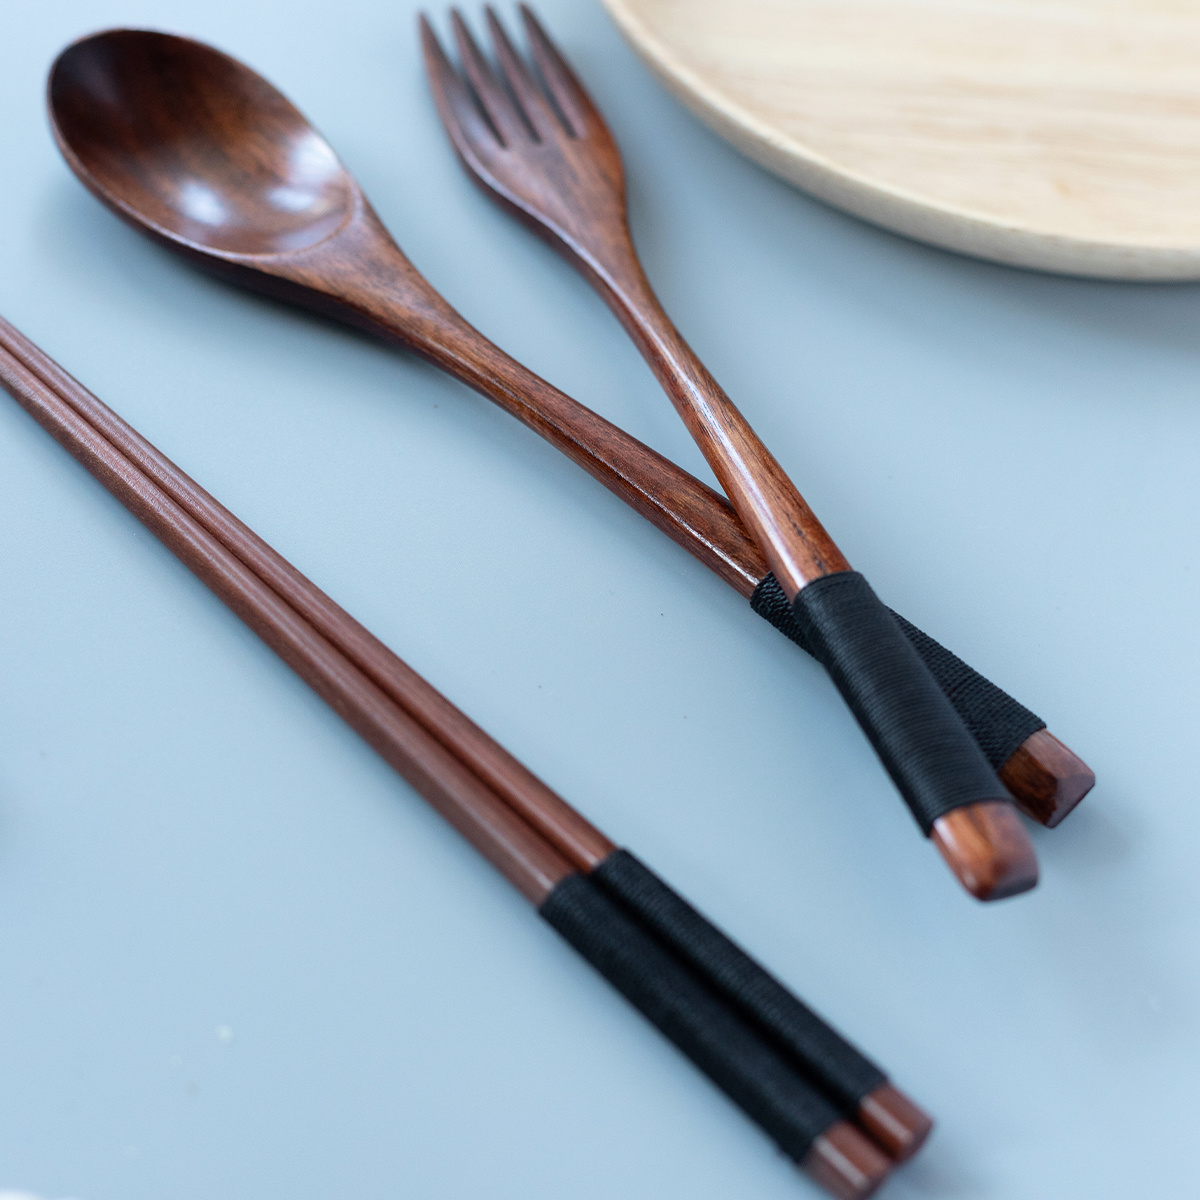 TIDTALEO 20 Pairs Chopsticks eating chopstick dinnerware wooden frying  utensils lo mein hot pot utensils Wooden Flatware chop sticks wooden  cutlery